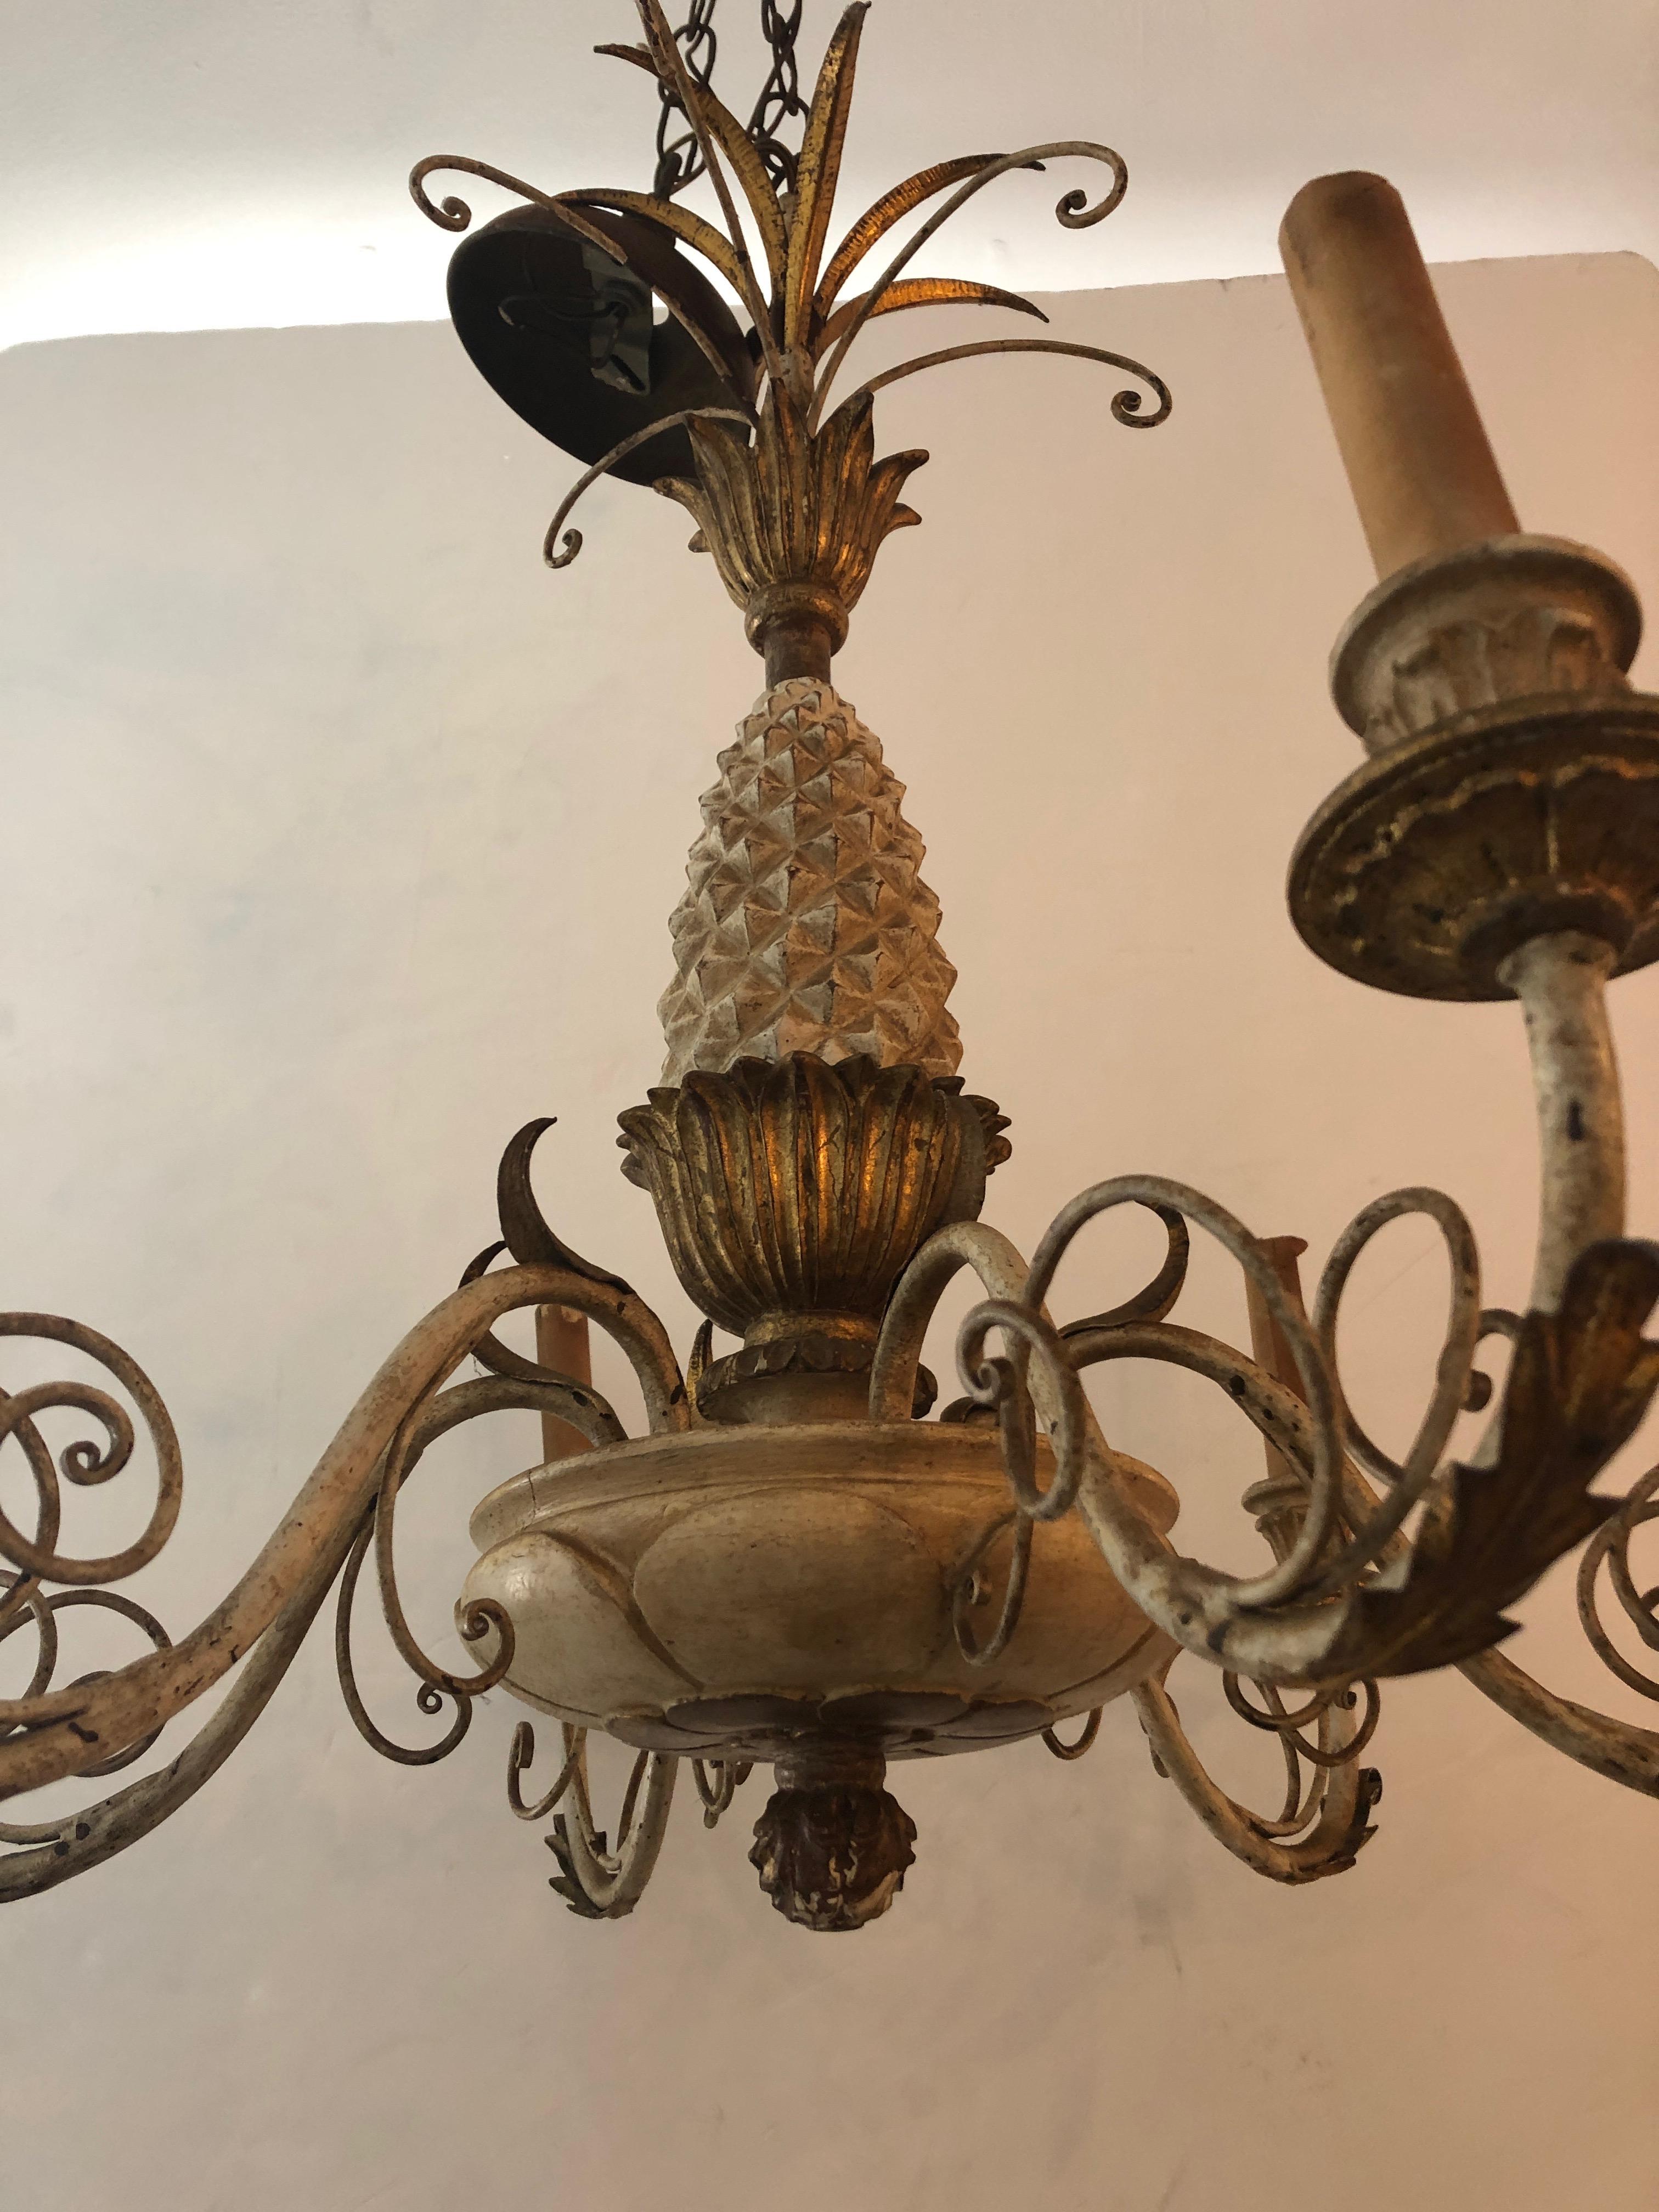 Ein klassisch eleganter, weiß-goldener italienischer Kronleuchter mit Ananasmotiv aus geschnitztem Holz, Eisen und Zinn mit 6 Armen und wunderschönen Details von oben bis unten. Wird mit Decken-CAP geliefert.